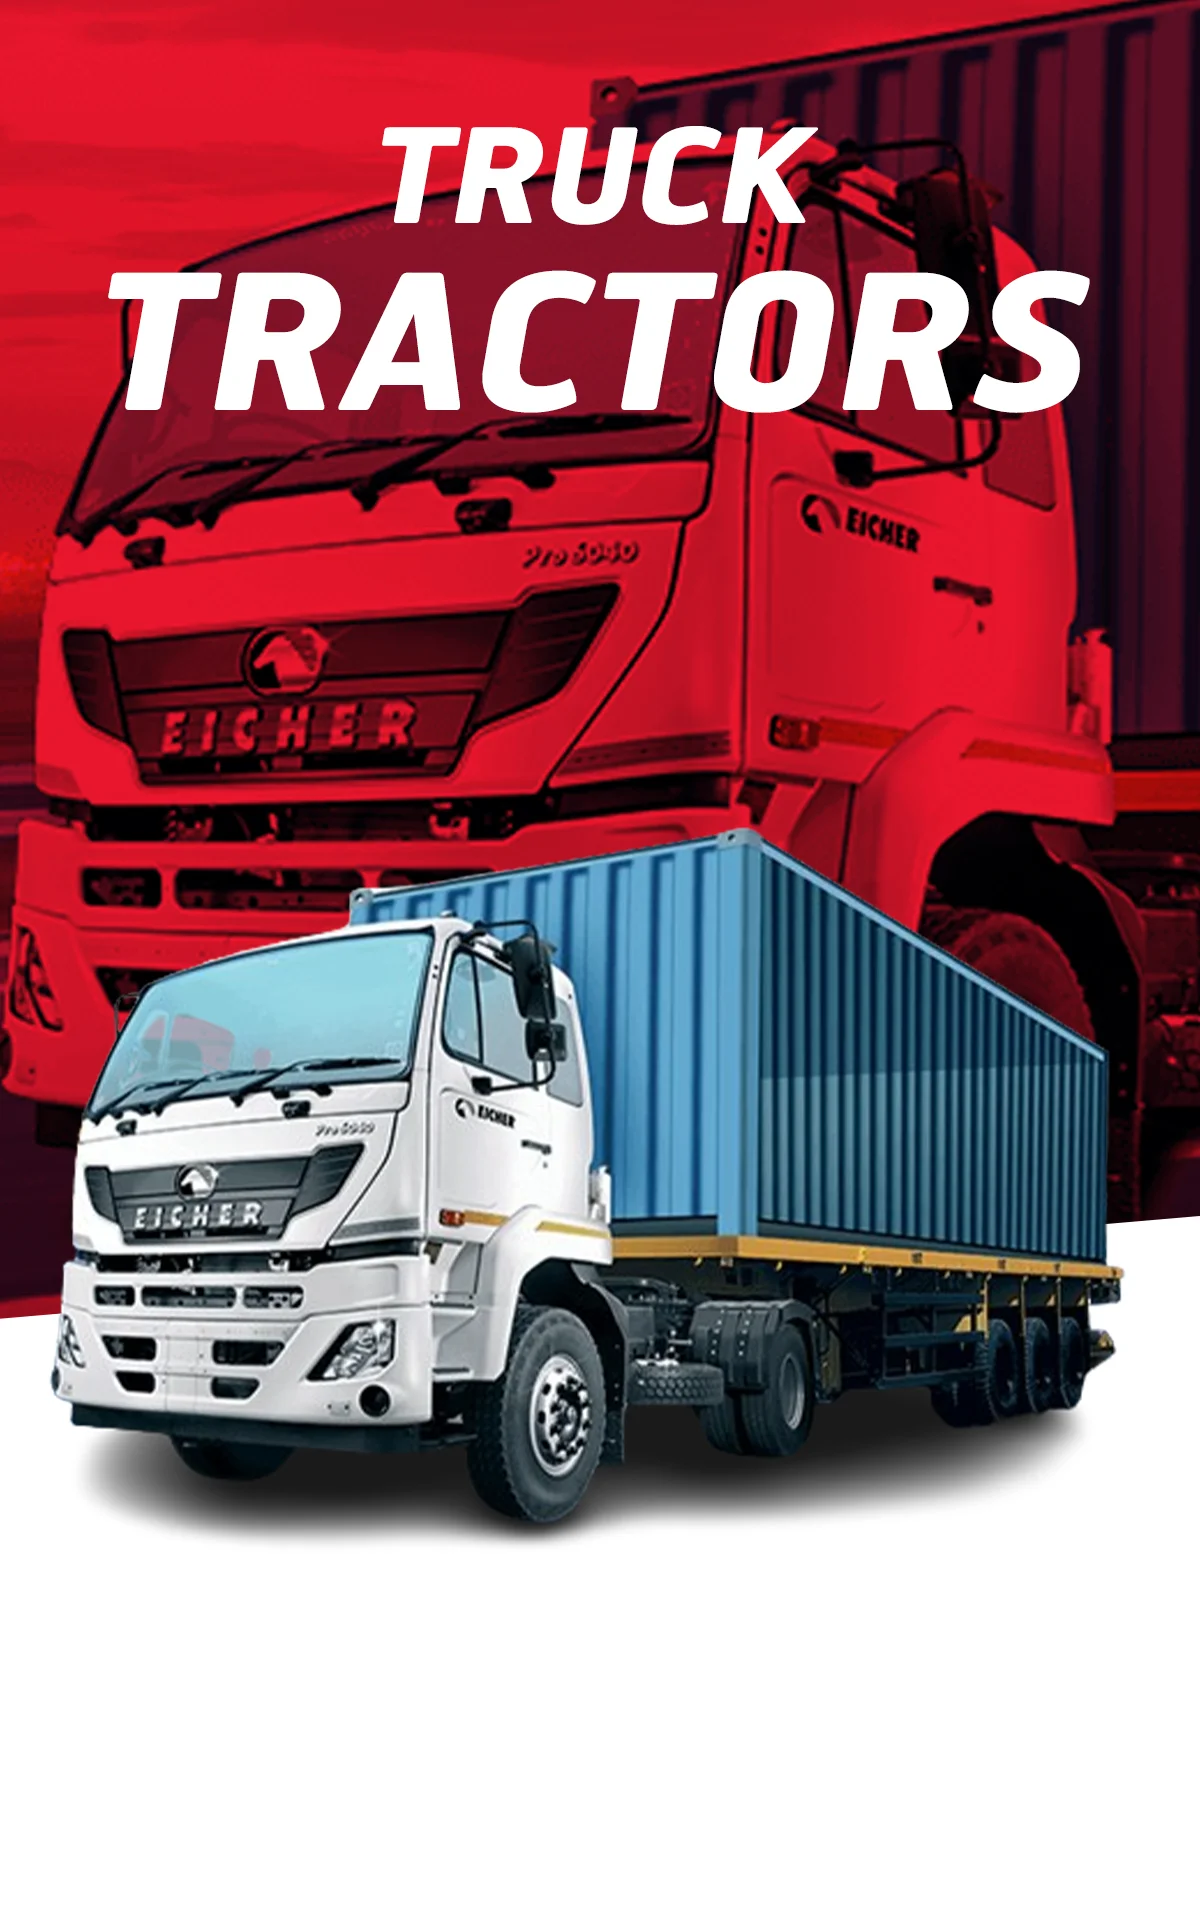 Myride Commercial Truck Tractors banner